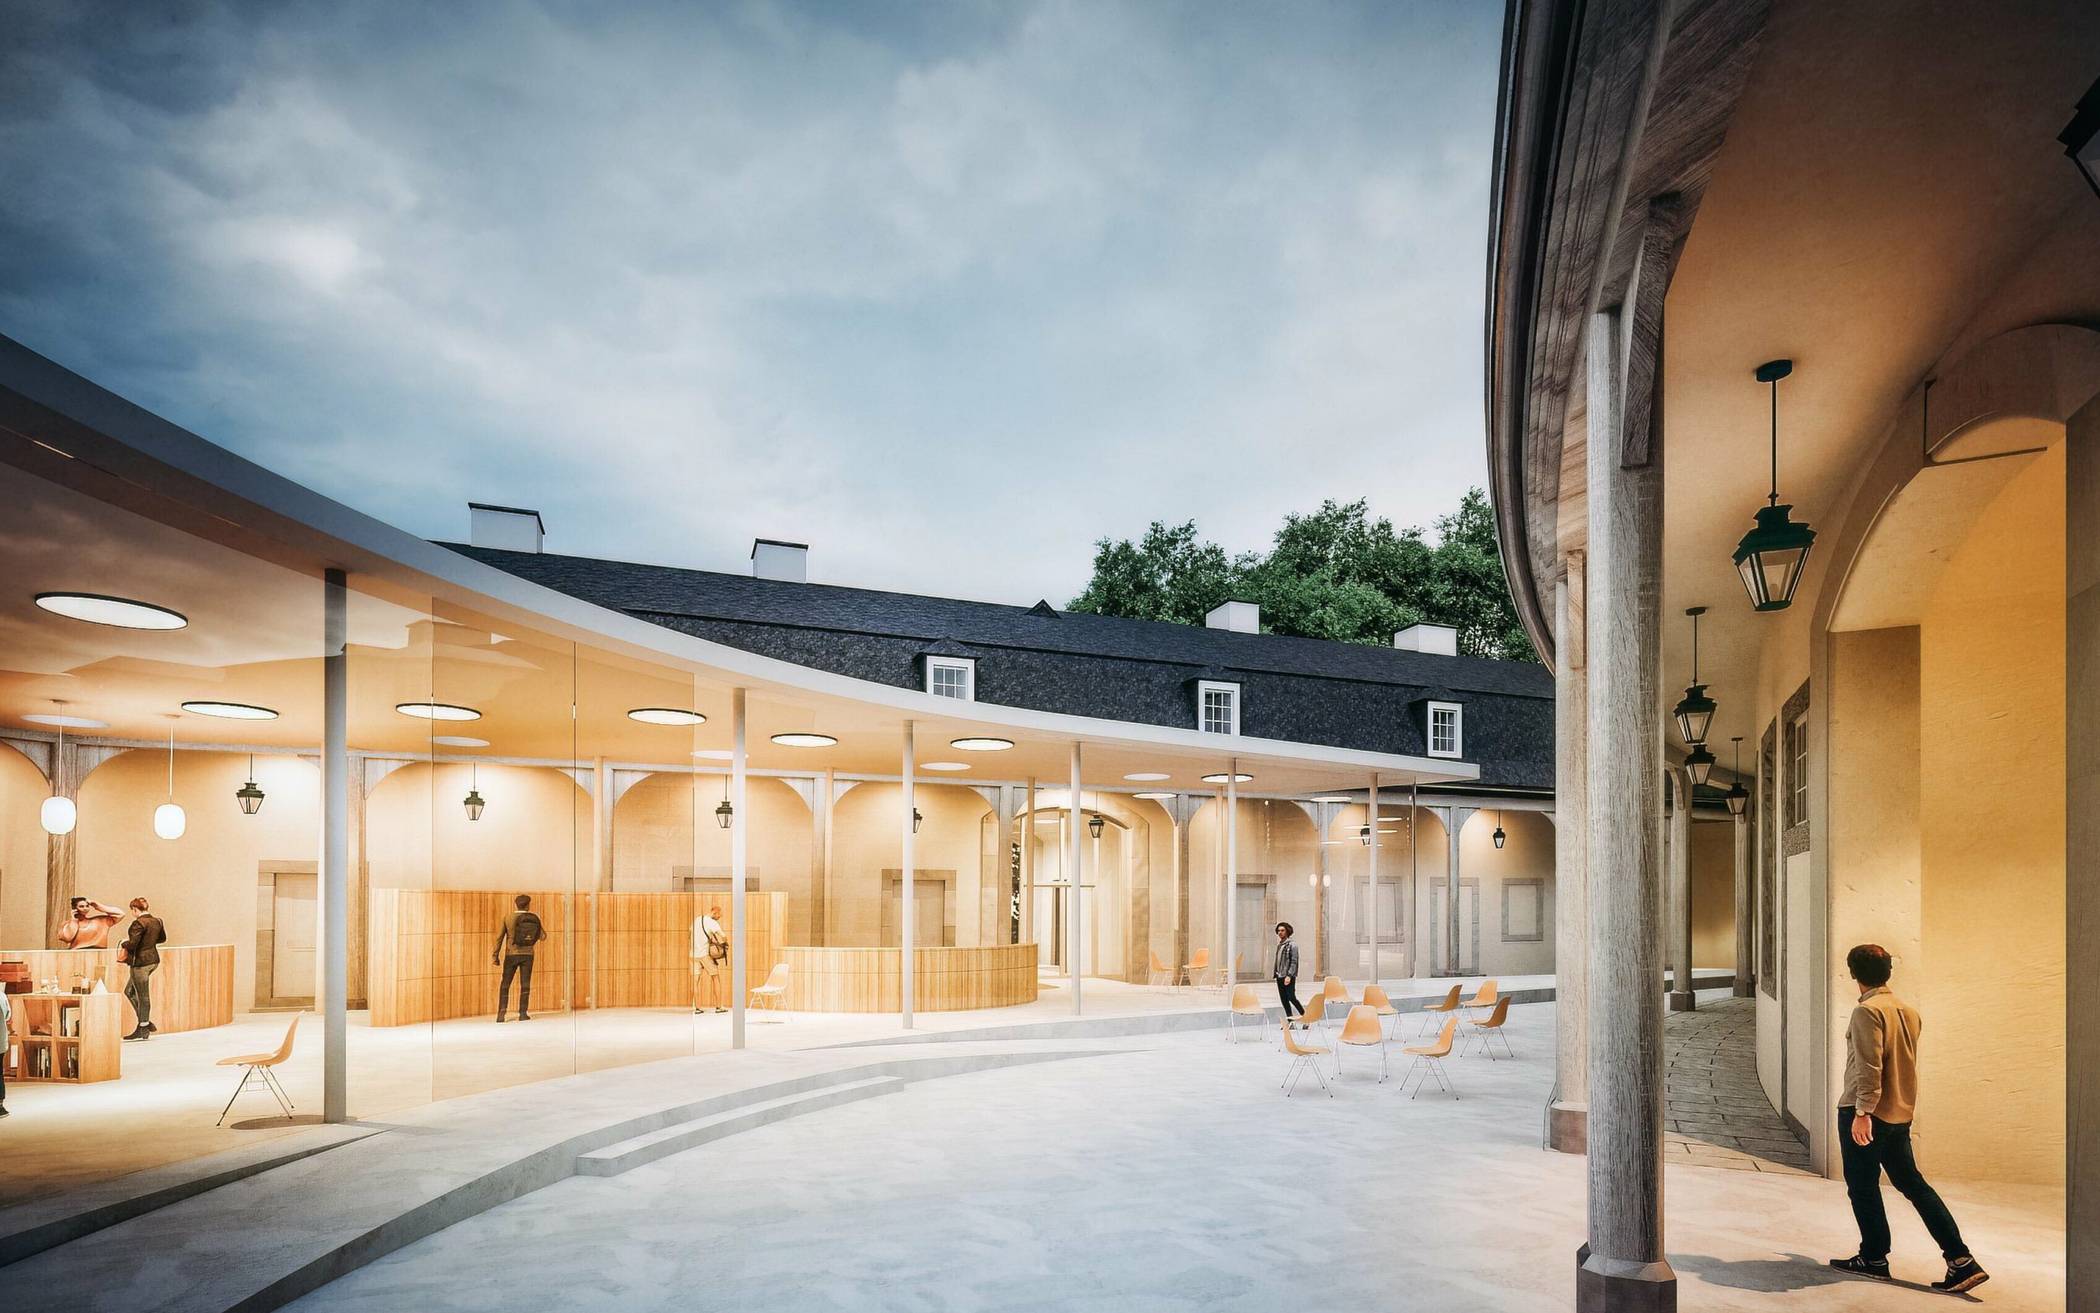  Der neue Westflügel von Schloss Benrath soll zukünftig ein neues Museum beherbergen.  Foto: Architekturbüro Profs. Spital-Frenking + Schwarz 